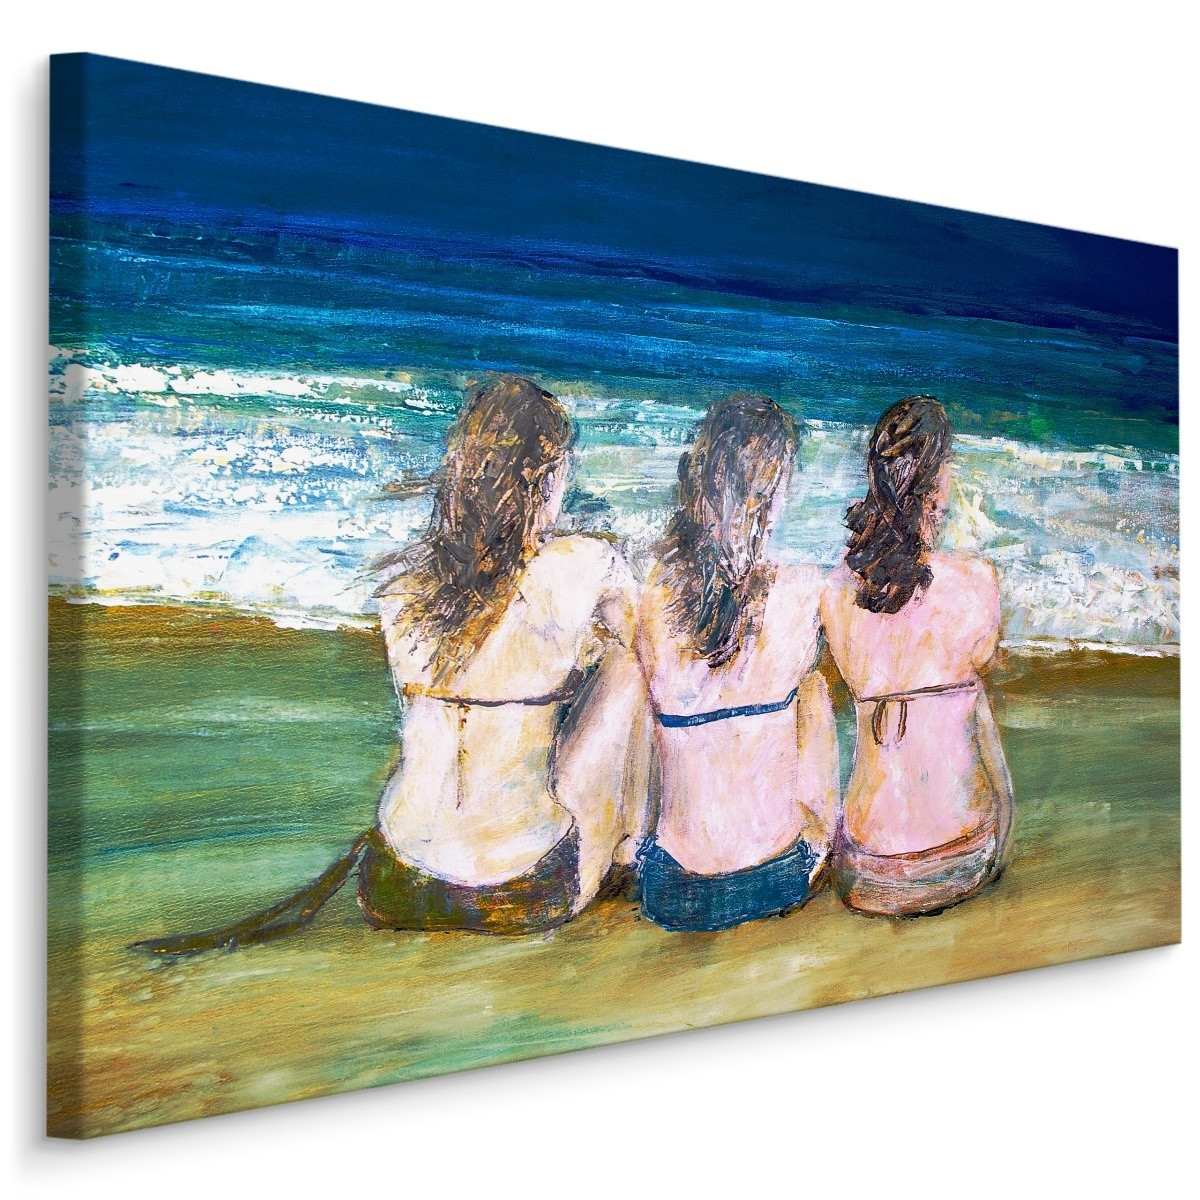 Schilderij - Drie Vrouwen aan Zee, Premium Print